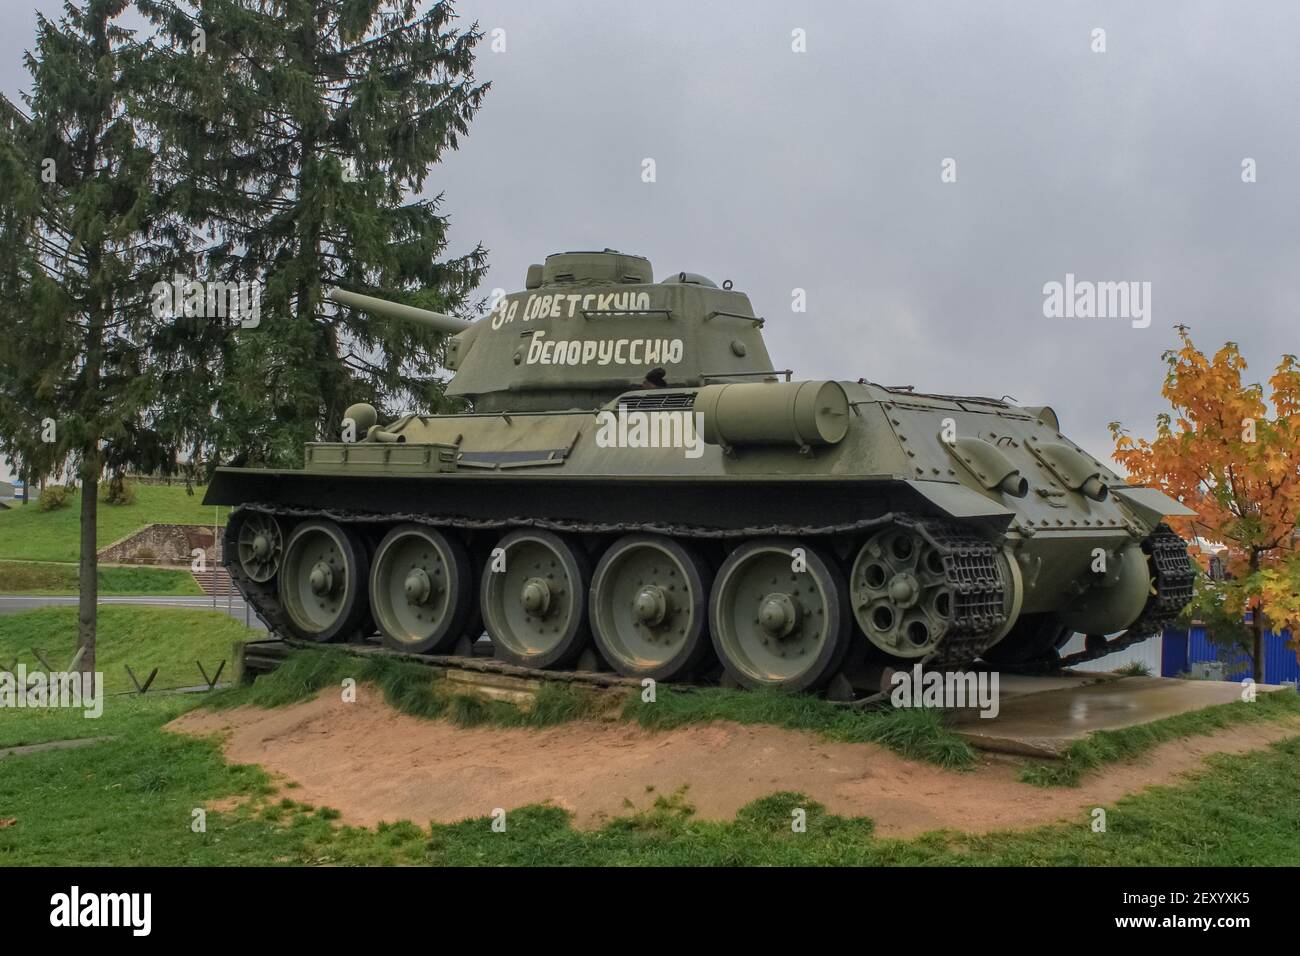 Minsk, Belaraus - 2. Oktober 2012: Der T-34 ist ein sowjetischer Mittelpanzer aus der Zeit des Zweiten Weltkriegs, der seit 1940 in Serie produziert wird. Die Maschine ist in installiert Stockfoto